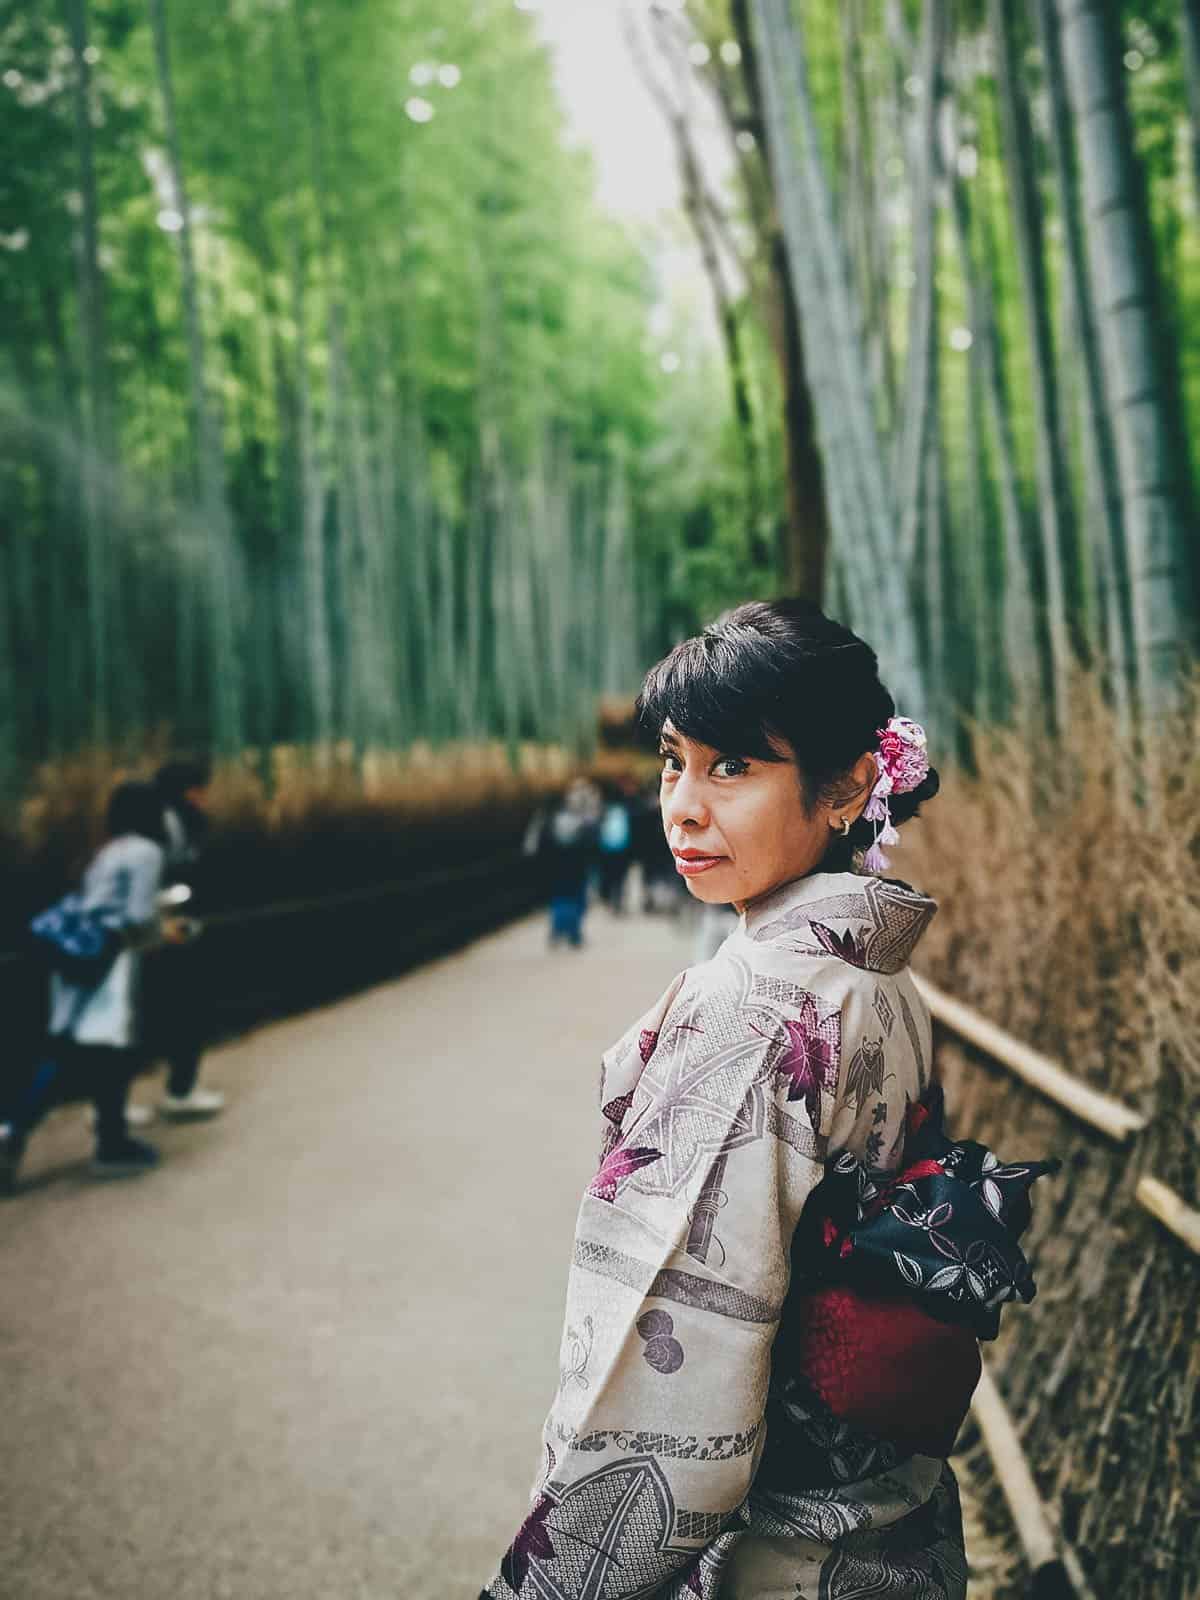 Woman in a kimono at Arashiyama Bamboo Grove in Kyoto